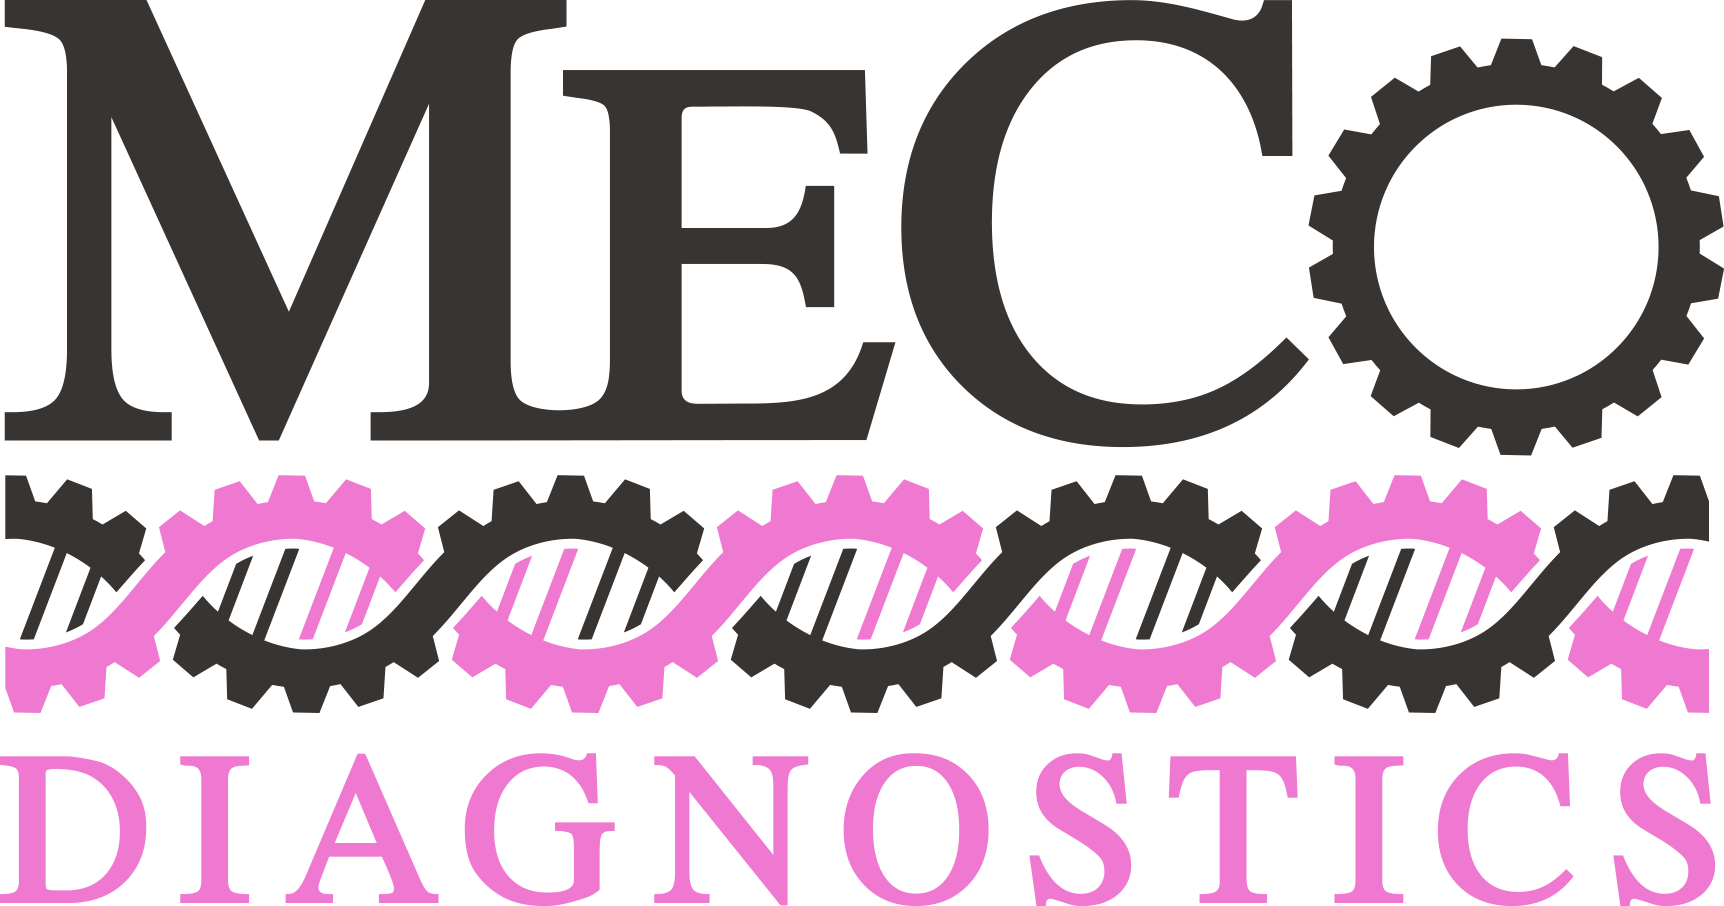 MeCo Diagnostics